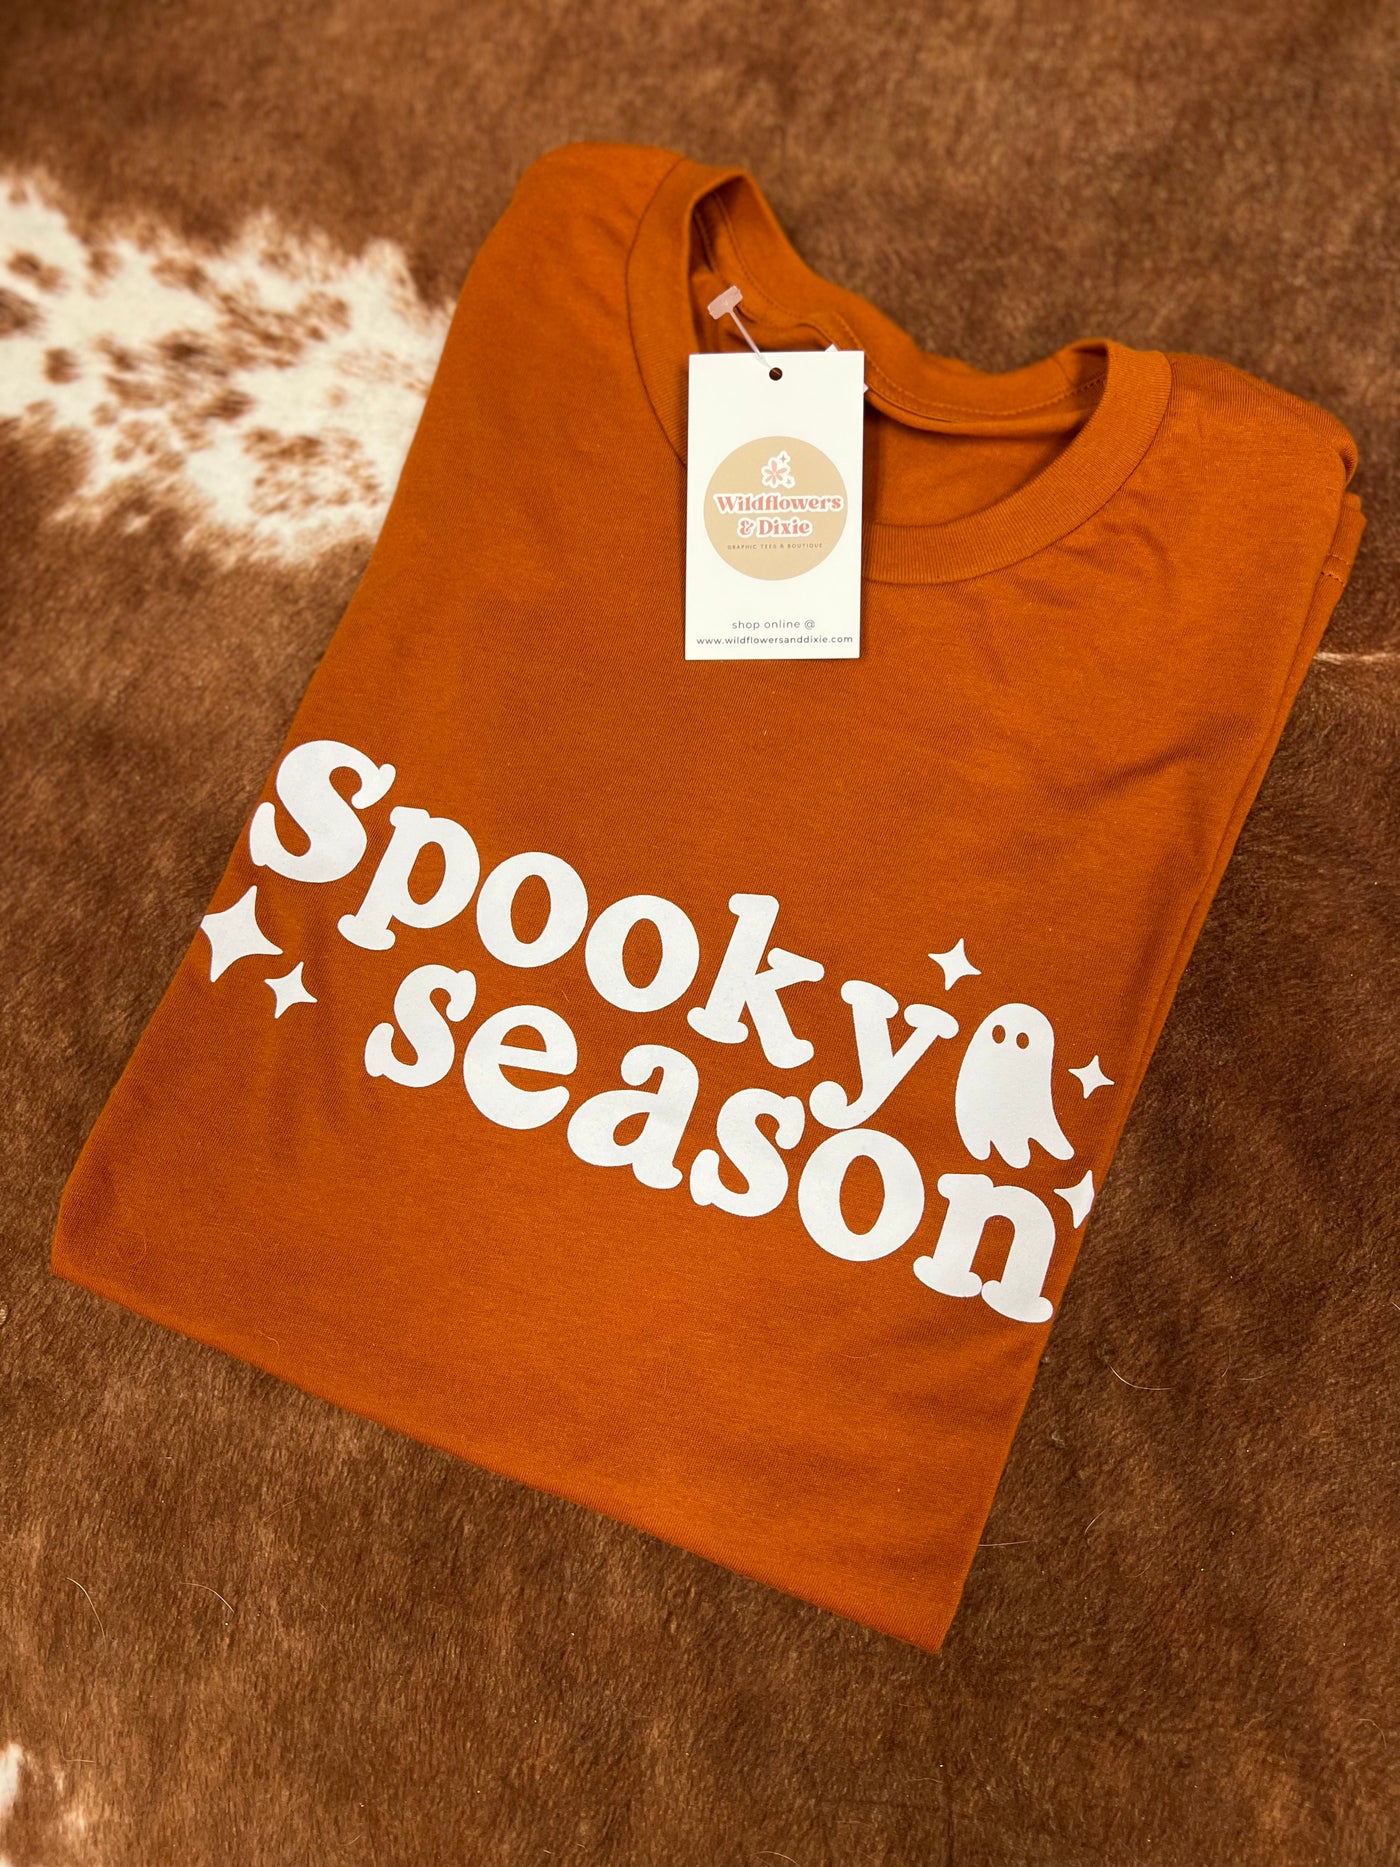 READY-TO-SHIP "Spooky Season" Shirt